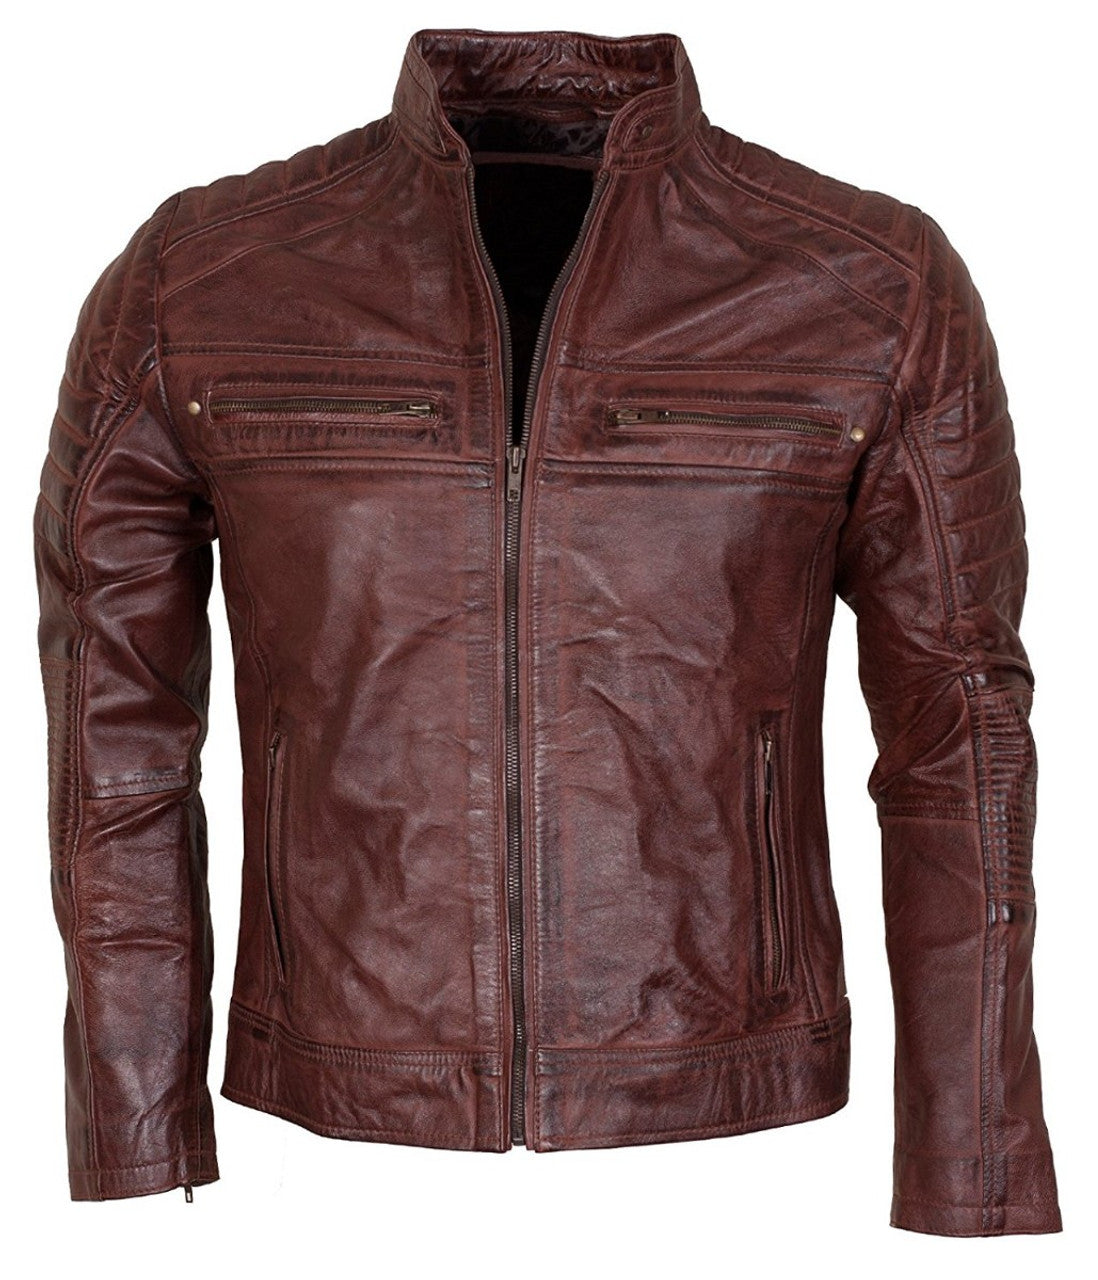 biker leather jacket men's waxed leather jacket vintage look jacket genuine leather jacket for men handmade jacket vintage winter jacket zipper jacket for men rust jacket 